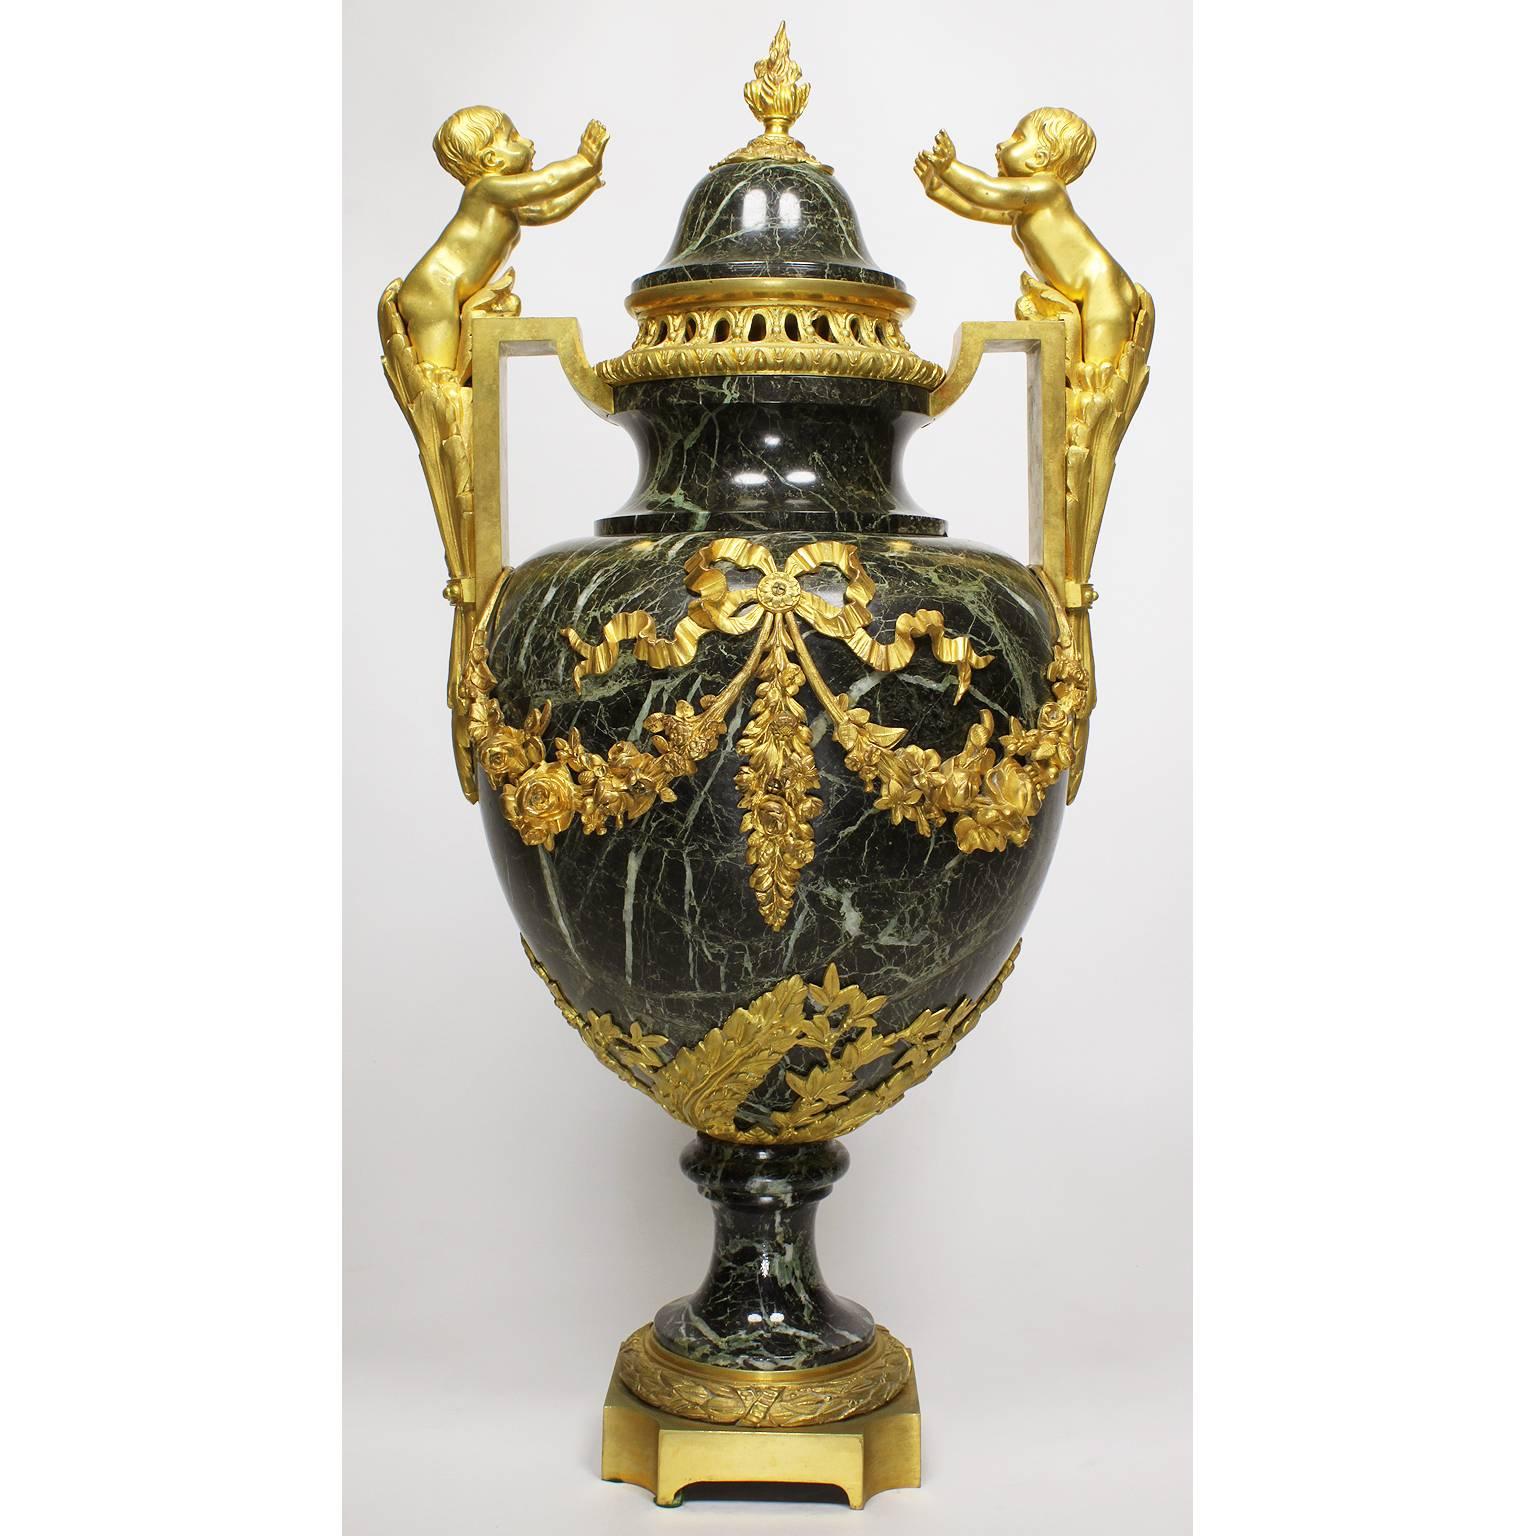 Paire d'urnes en bronze doré (Ormolu) et en marbre Vert Maurin (marbre vert veiné), de style Louis XVI, du 19e au 20e siècle. Le couvercle amovible en forme de dôme est centré par un fleuron en forme de flambeau. Le corps ovoïde est flanqué d'une